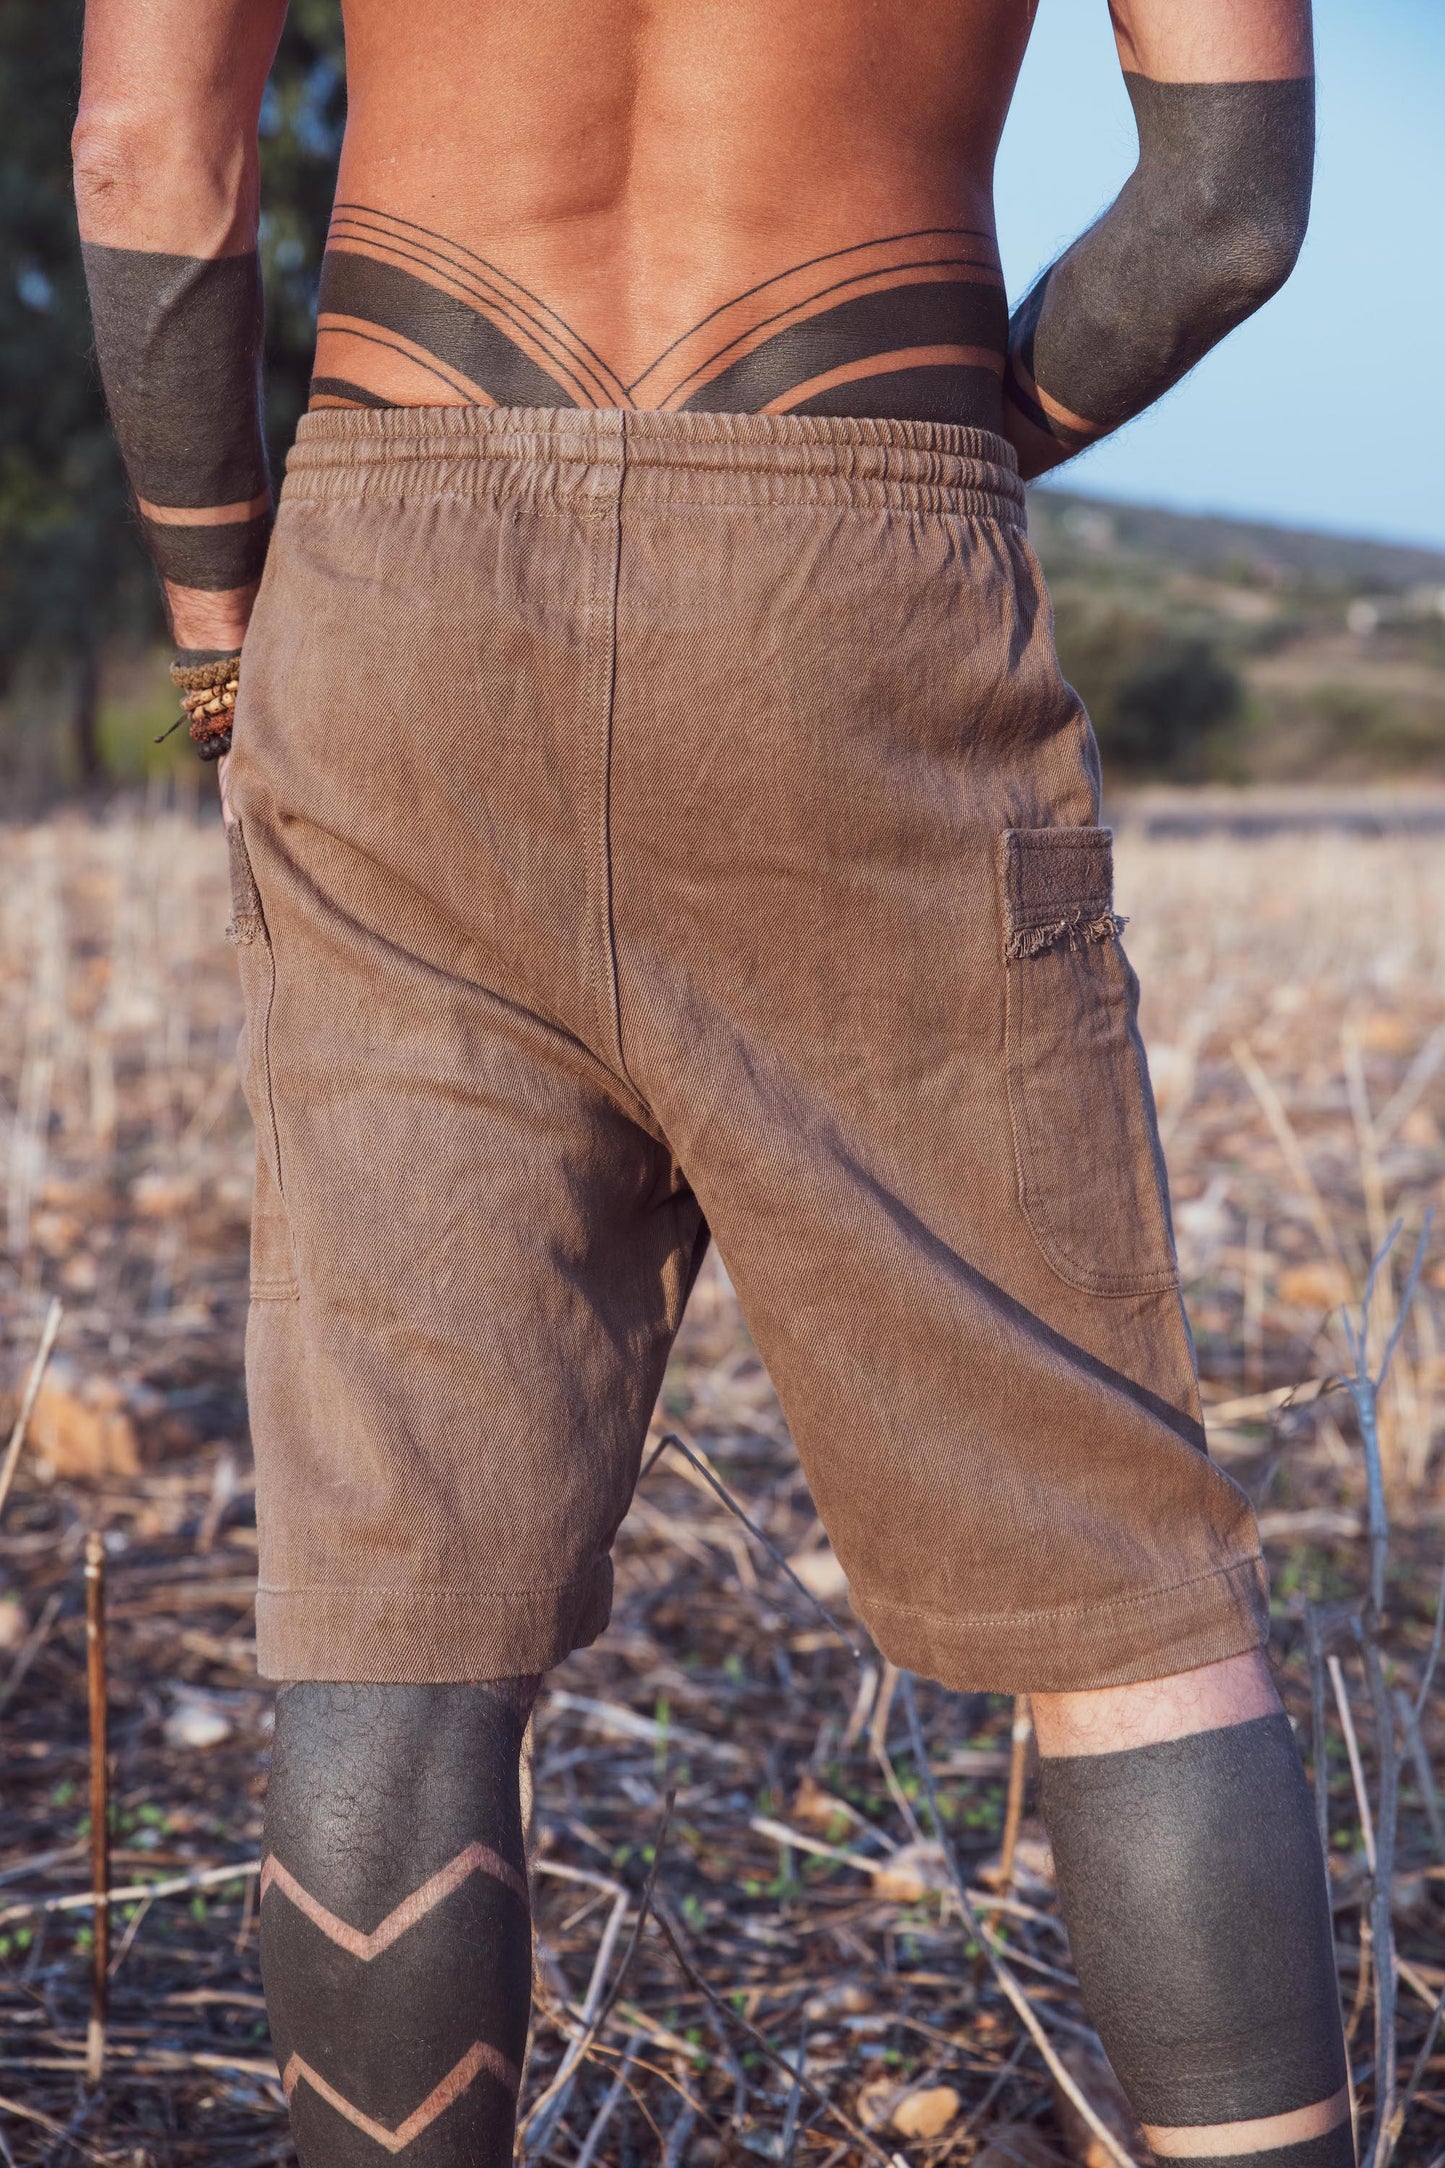 Hemp Short Pants ⫸ Herbal Dye Walnut Bark ⫸ Hemp Cotton